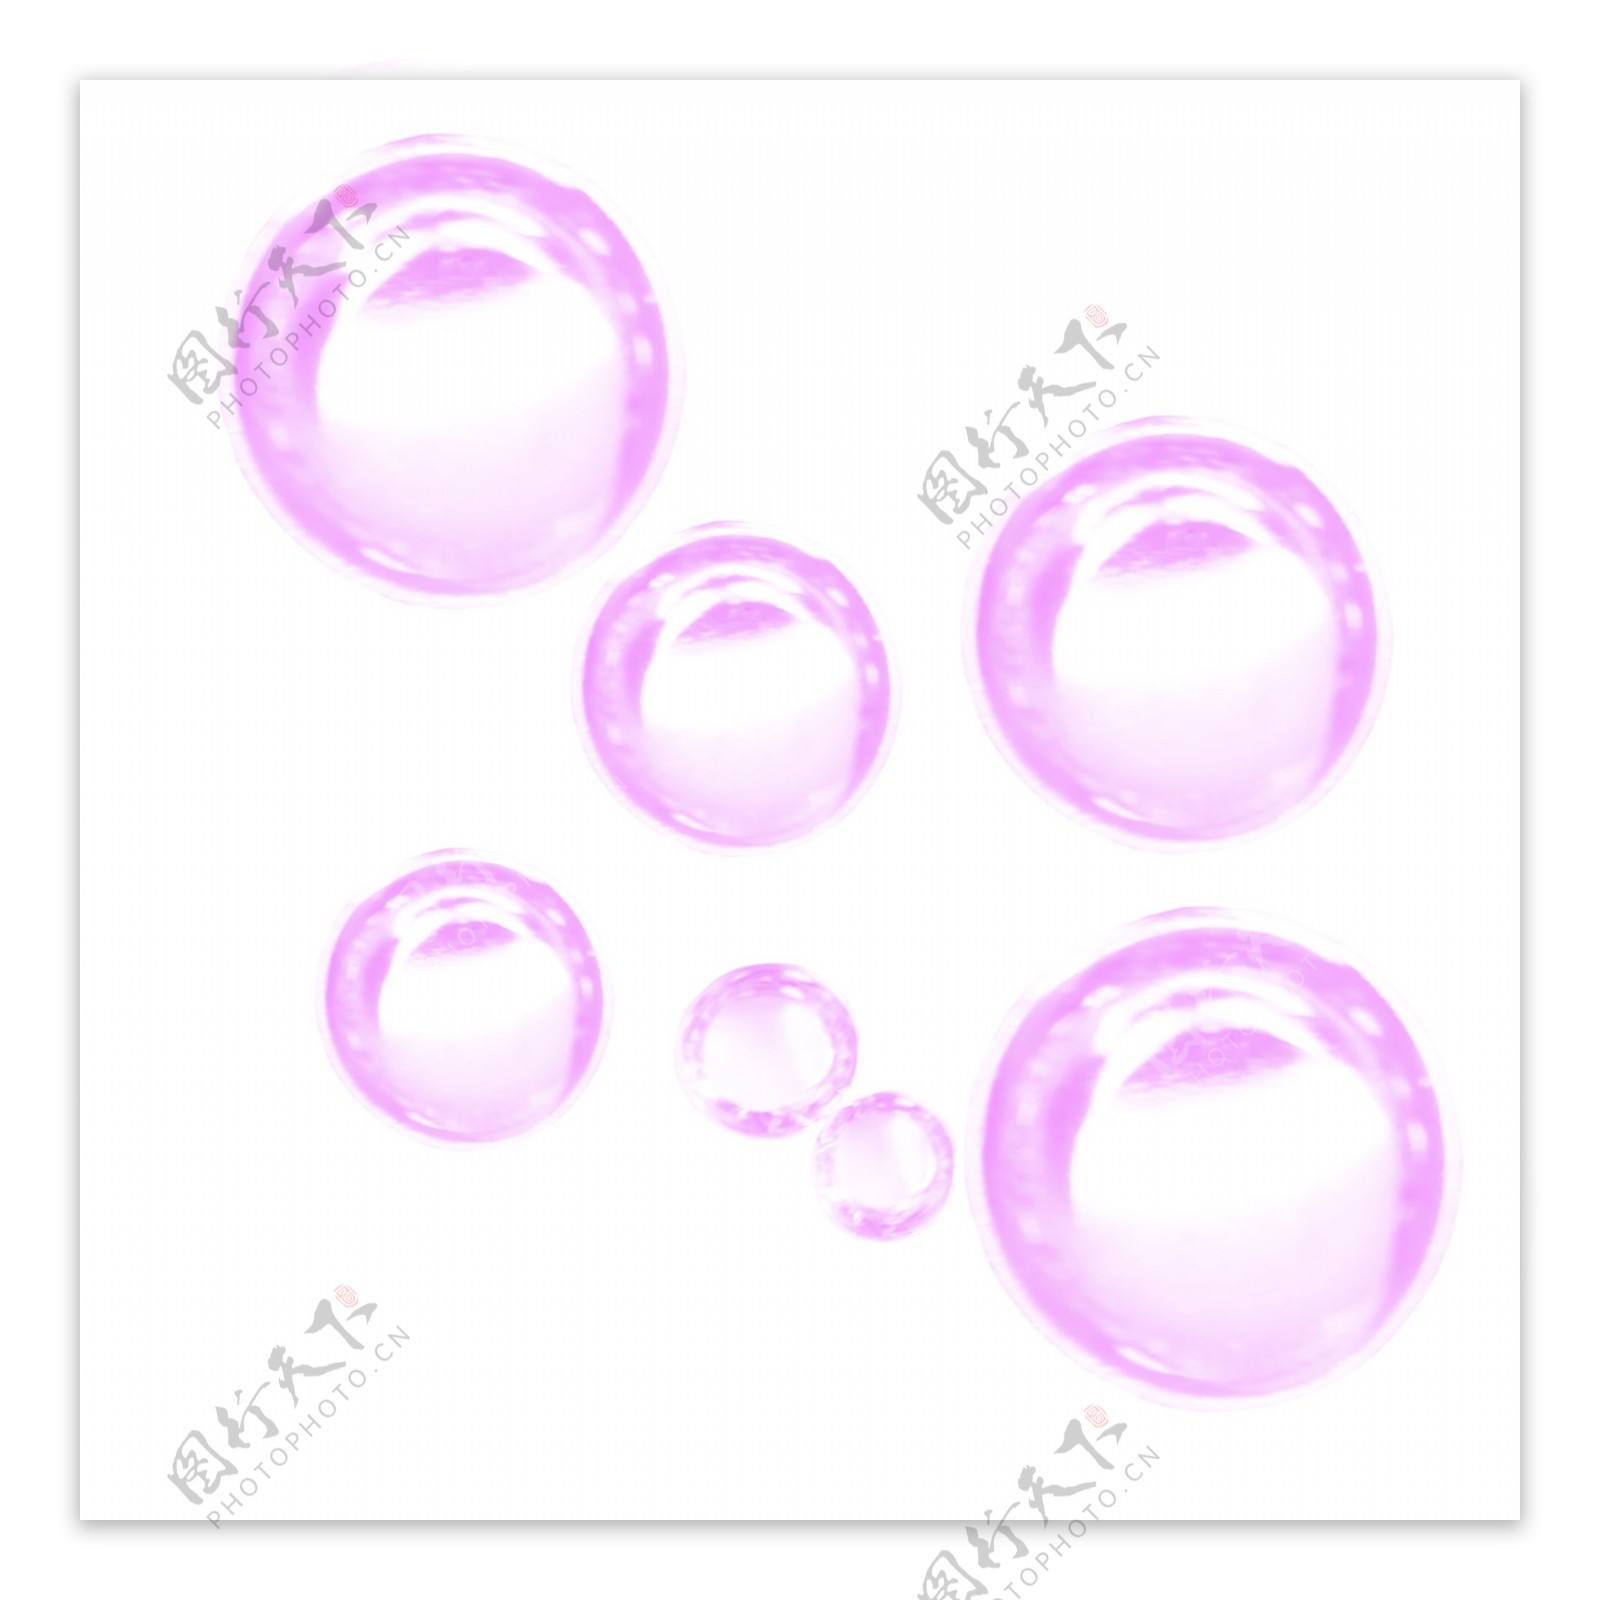 透明泡泡游乐气泡元素